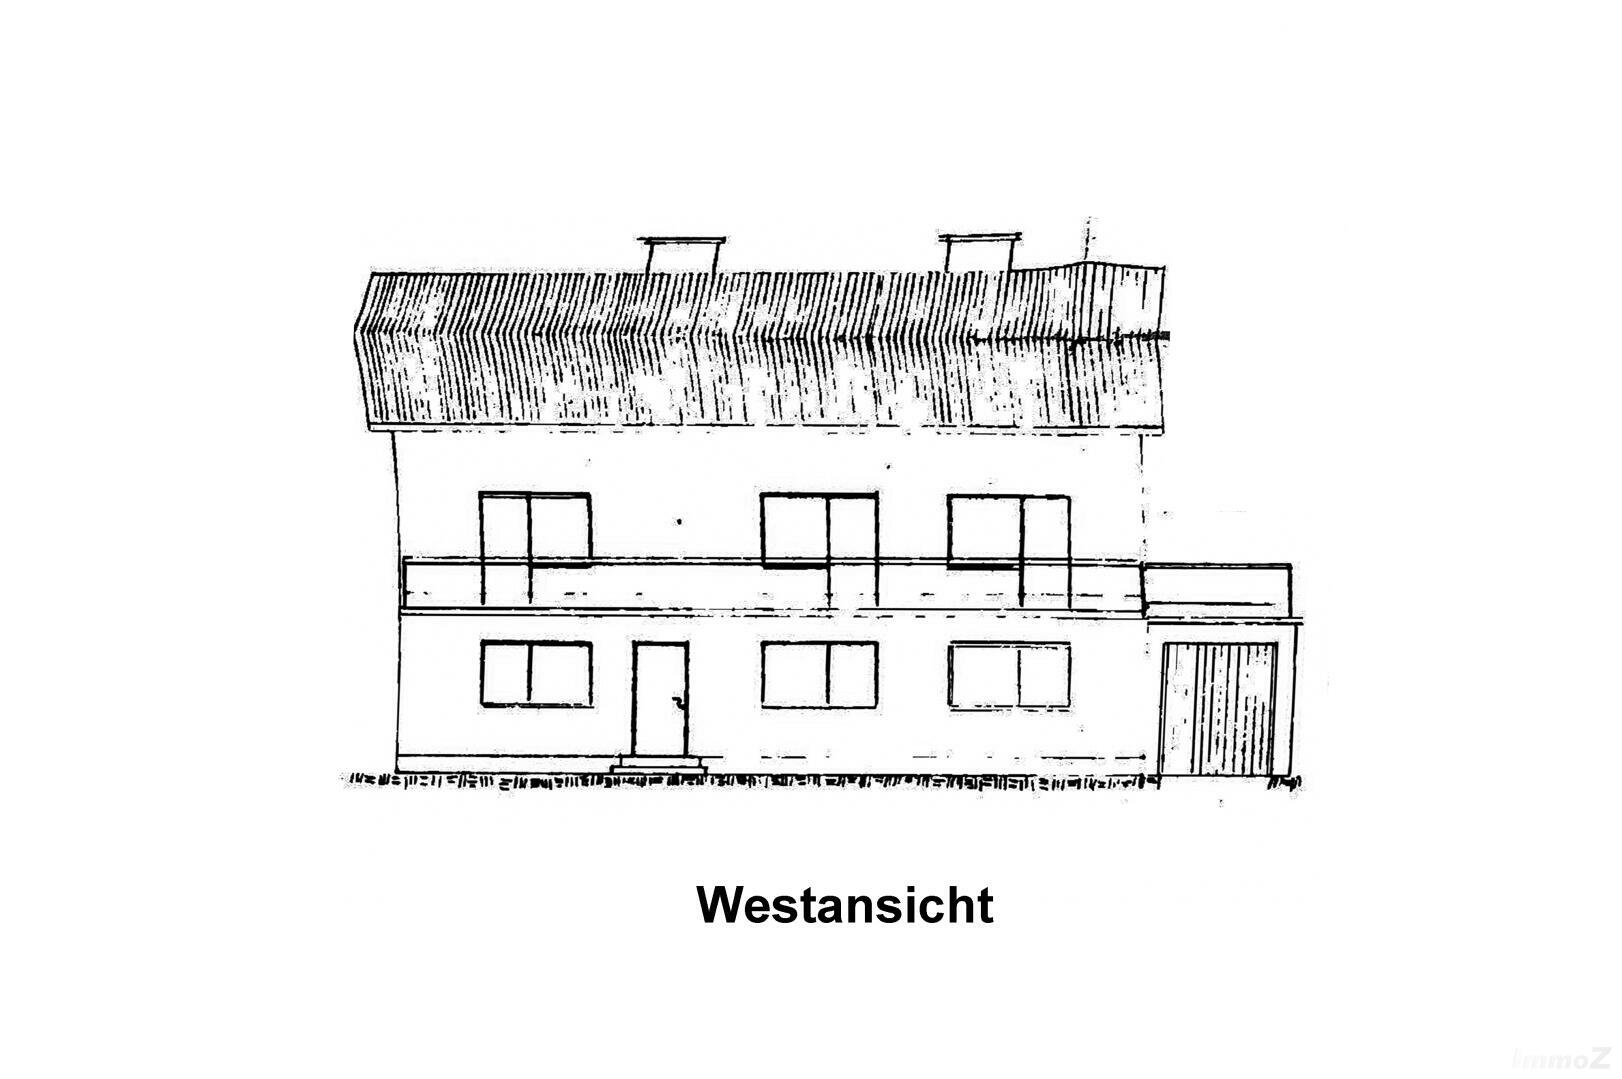 Haus zu kaufen: Eichbergstraße 20, 8046 Eichberg - Westansicht